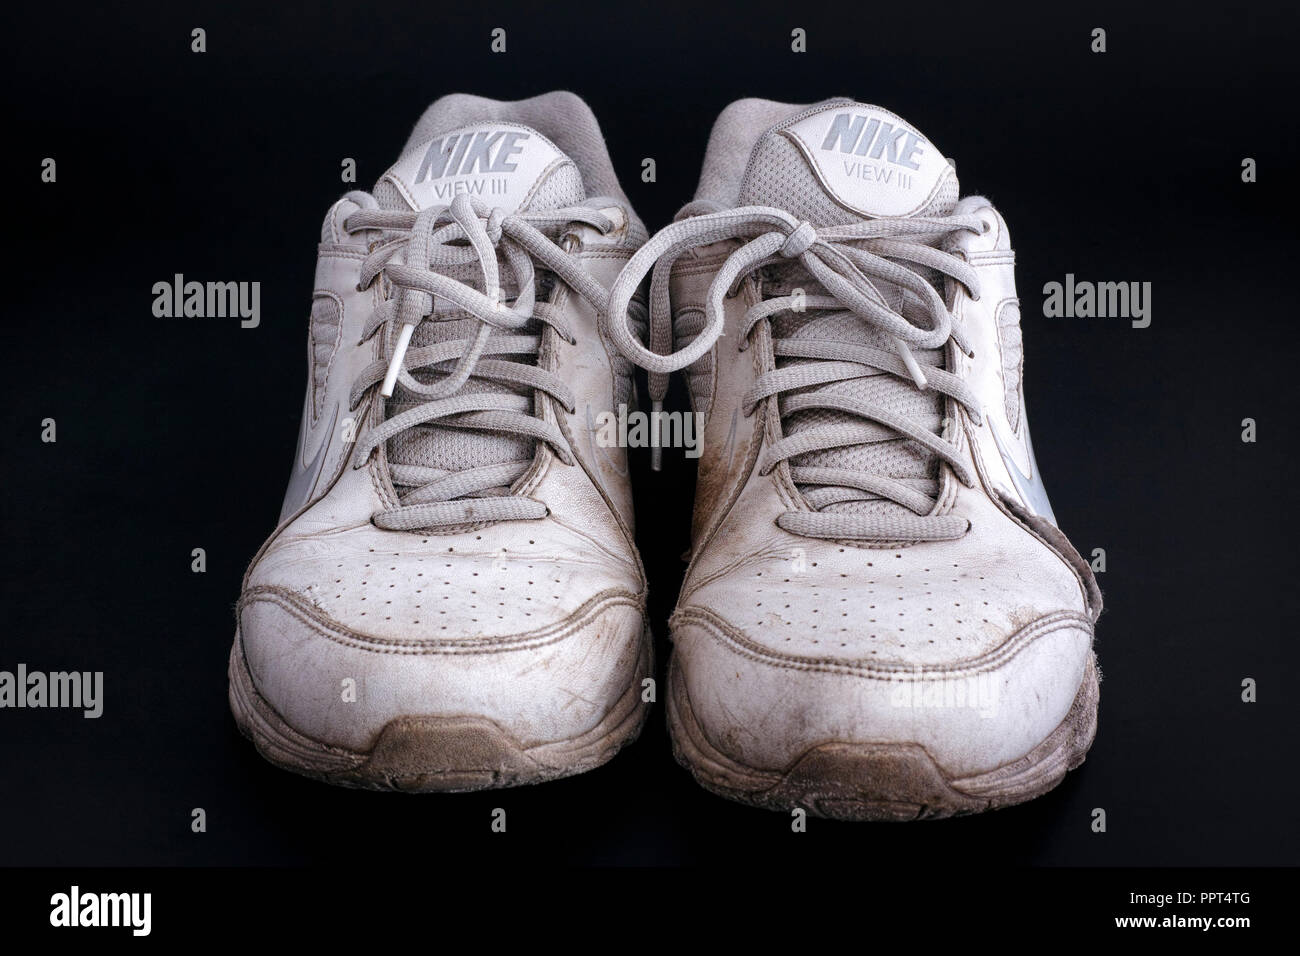 Tambow, Russische Föderation - Januar 23, 2016 Alte schmutzig weiß Nike  Ansicht III Sneakers auf schwarzen Hintergrund. Close-up Stockfotografie -  Alamy